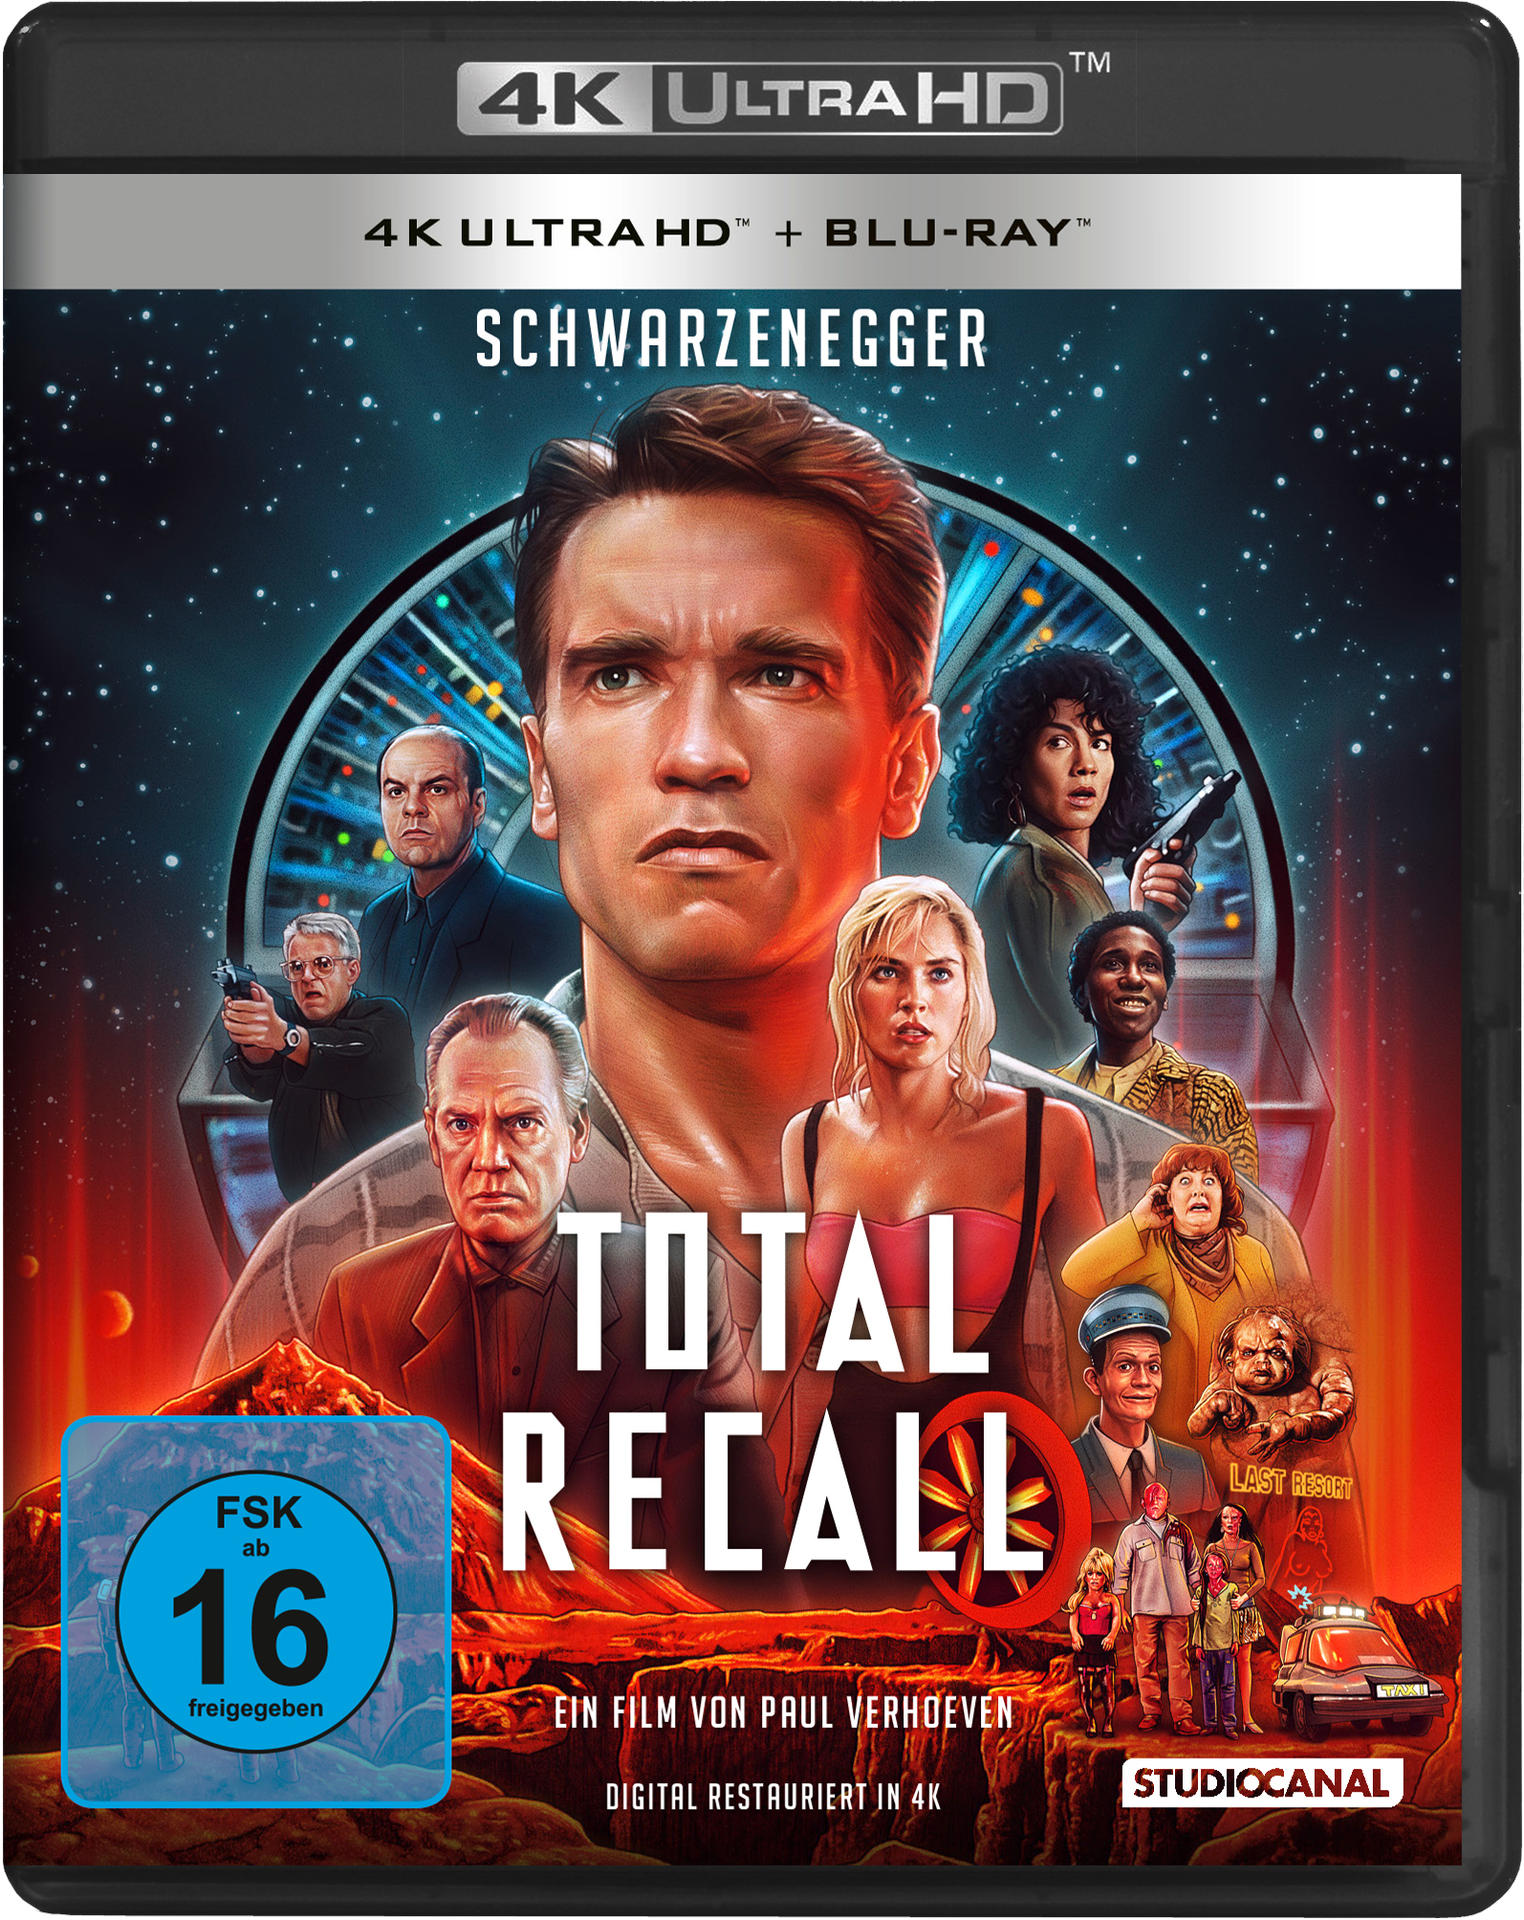 4K Die Blu-ray Ultra Erinnerung - Recall totale HD Total